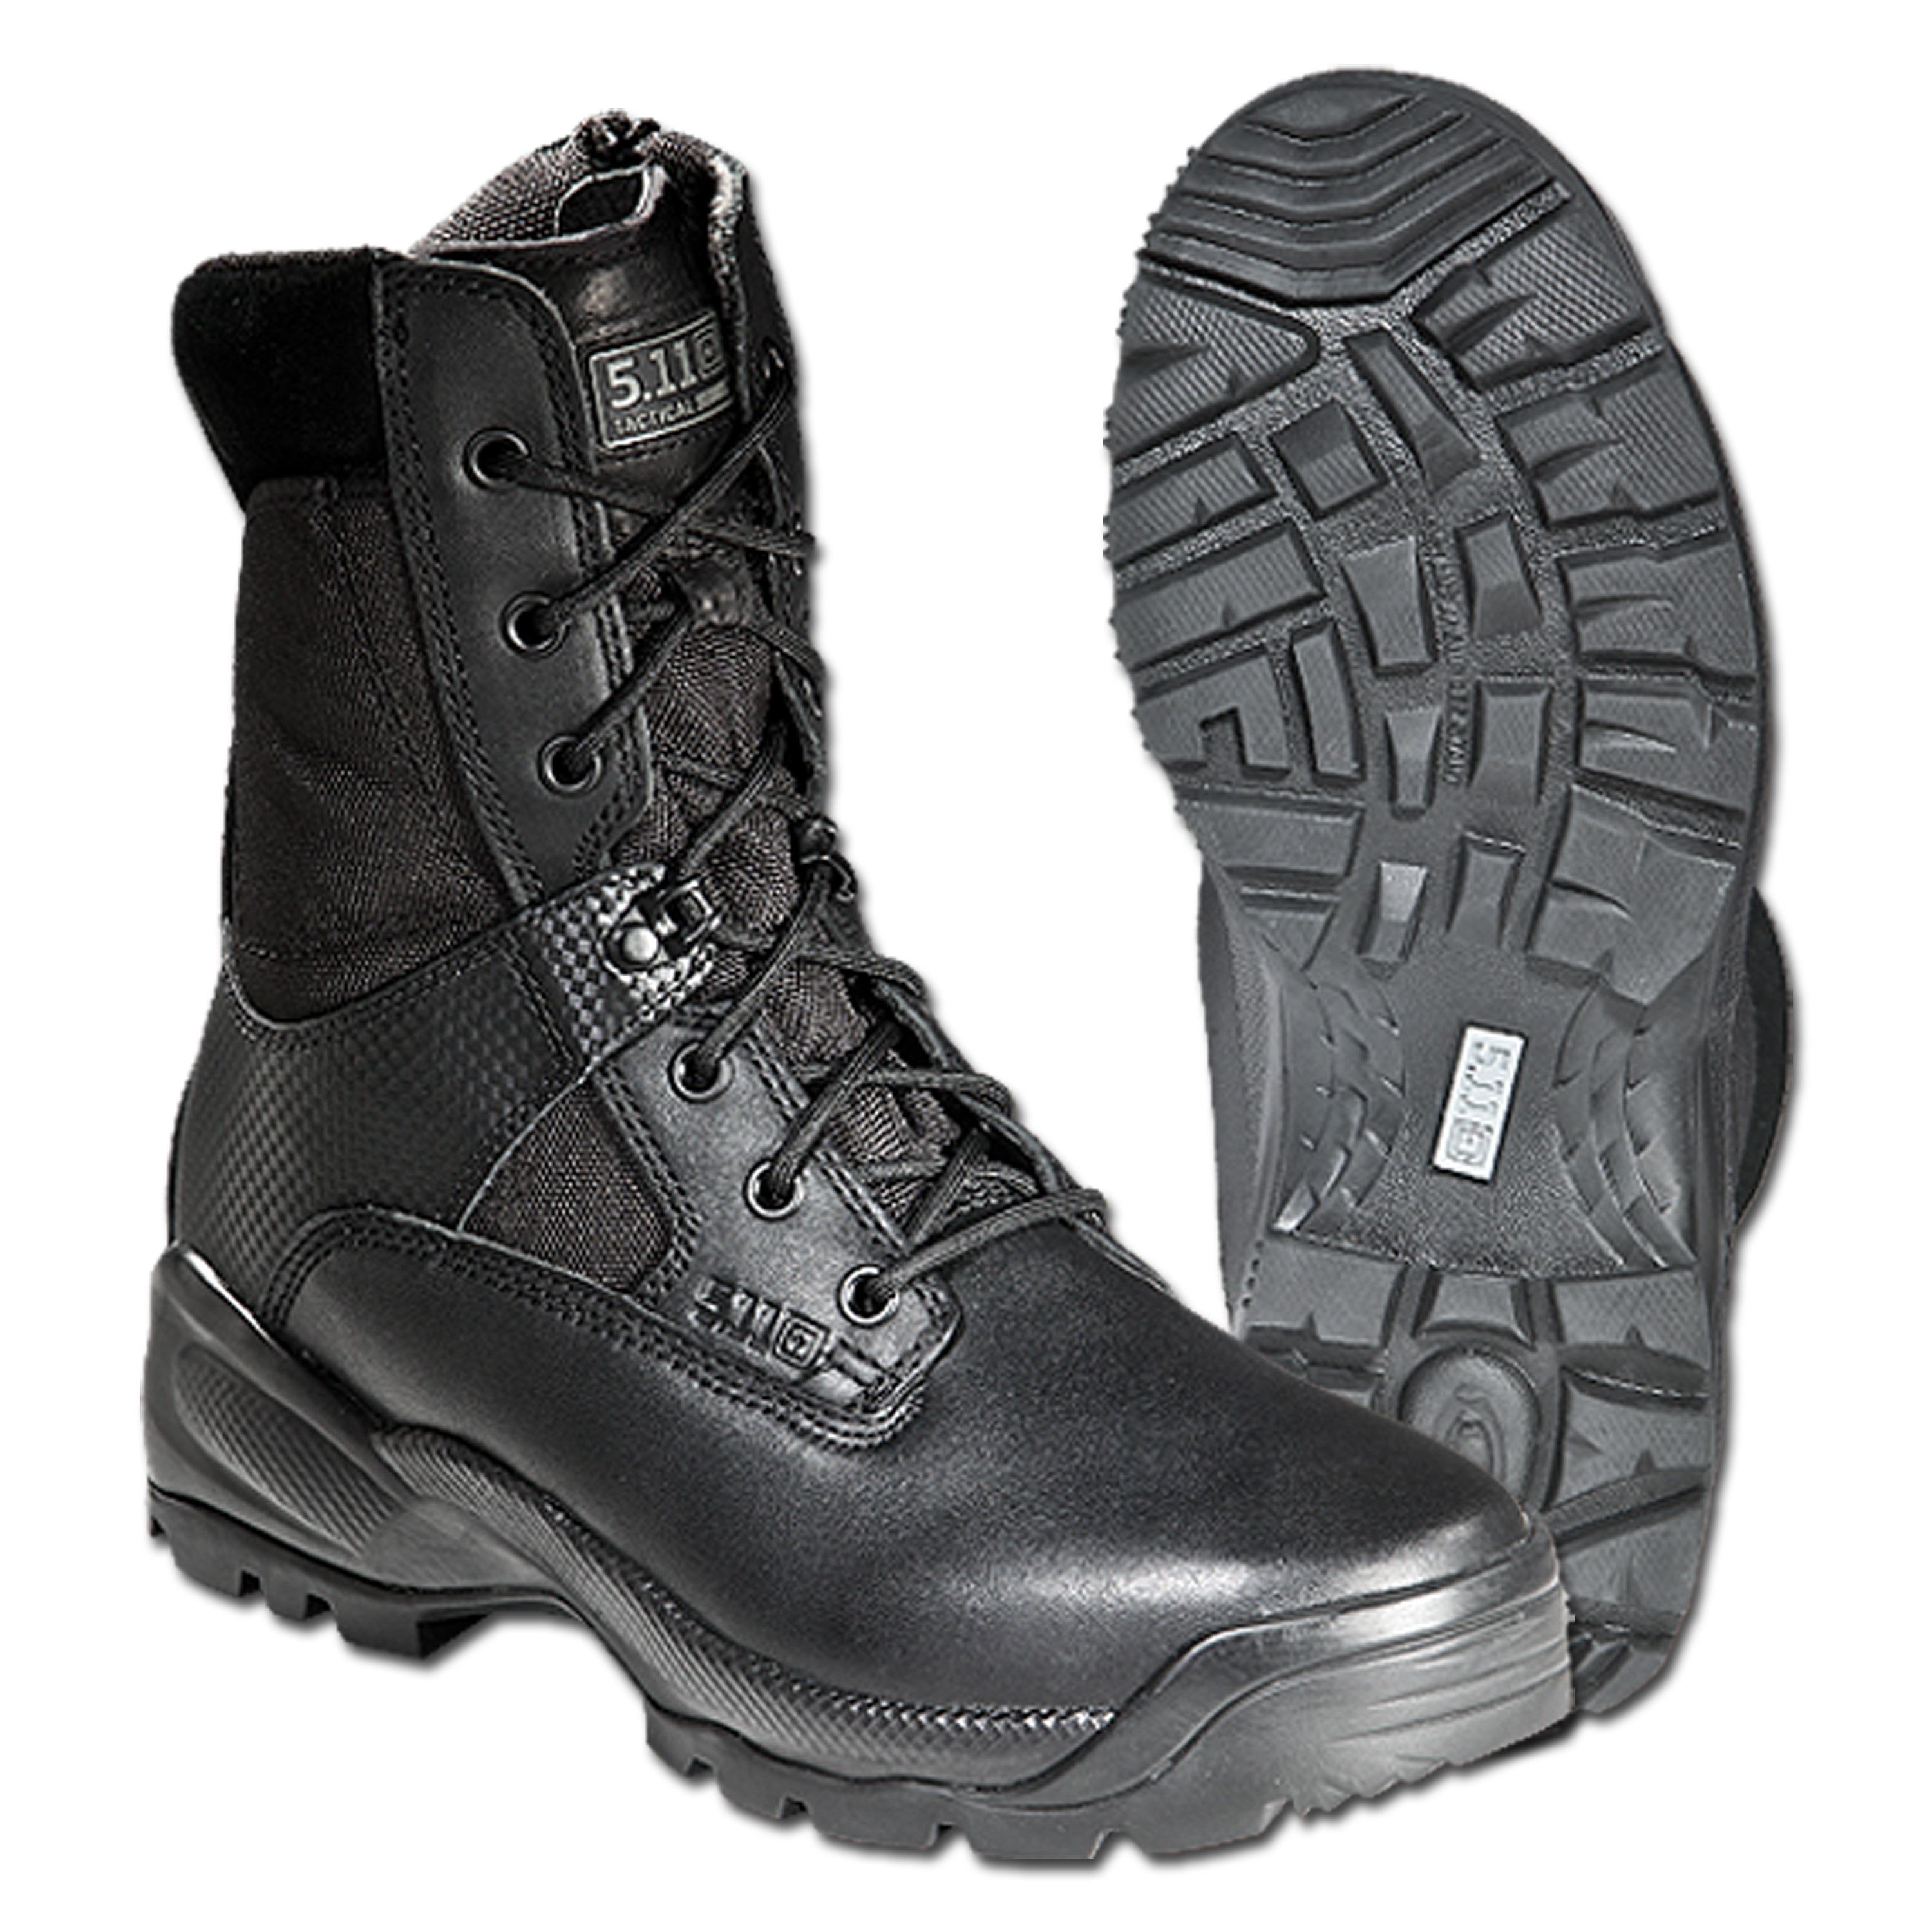 5.11 side zip boots